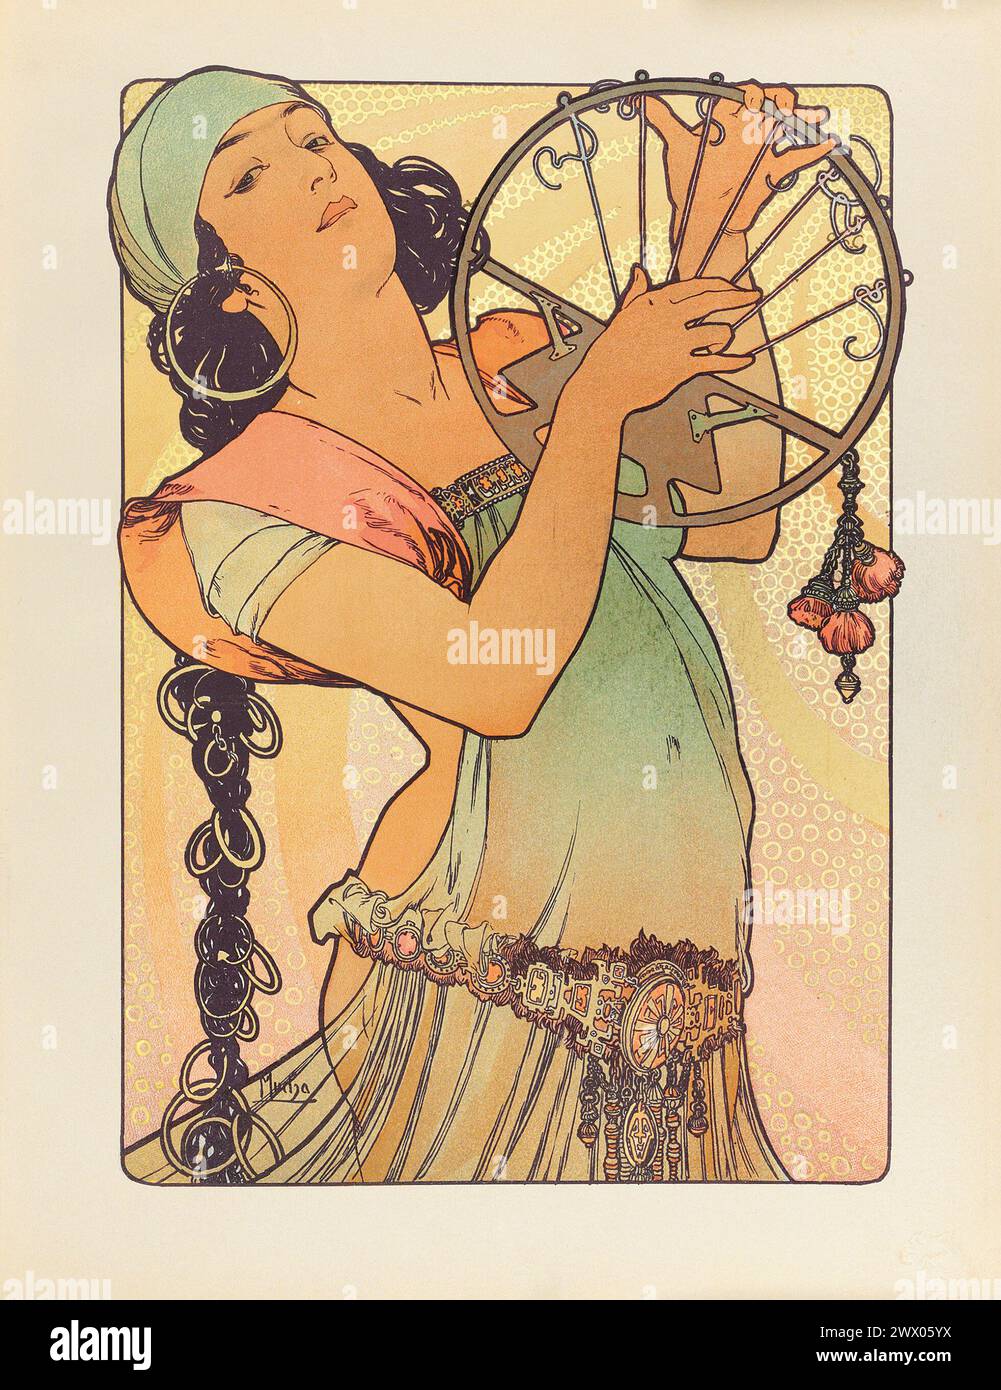 Imprimé Art Nouveau vintage. Salome par Alphonse Mucha 1897. De L'Estampe moderne Banque D'Images